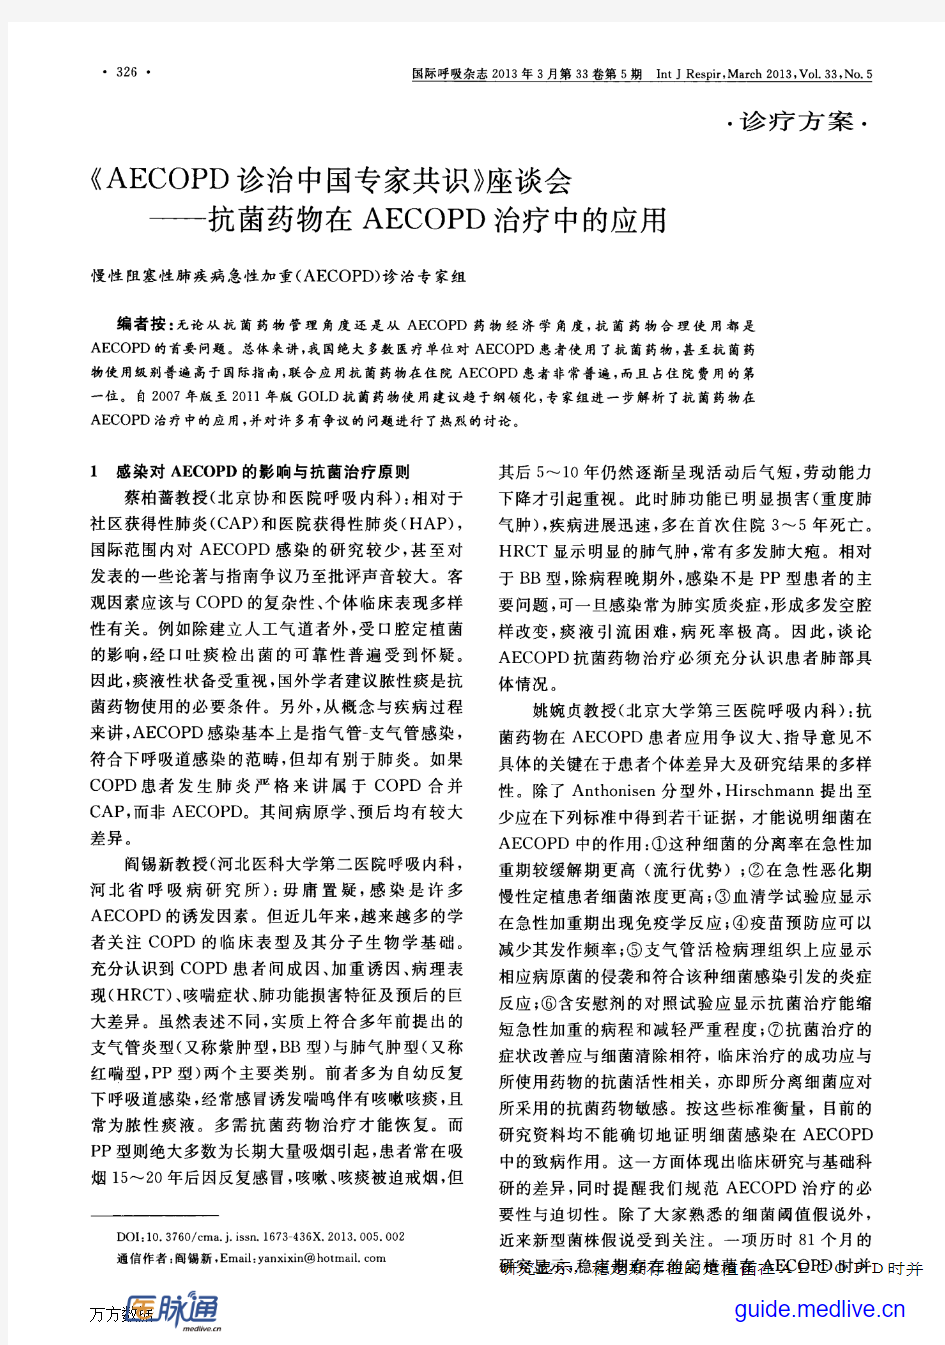 《AECOPD诊治中国专家共识》座谈会——抗菌药物在AECOPD治疗中的应用